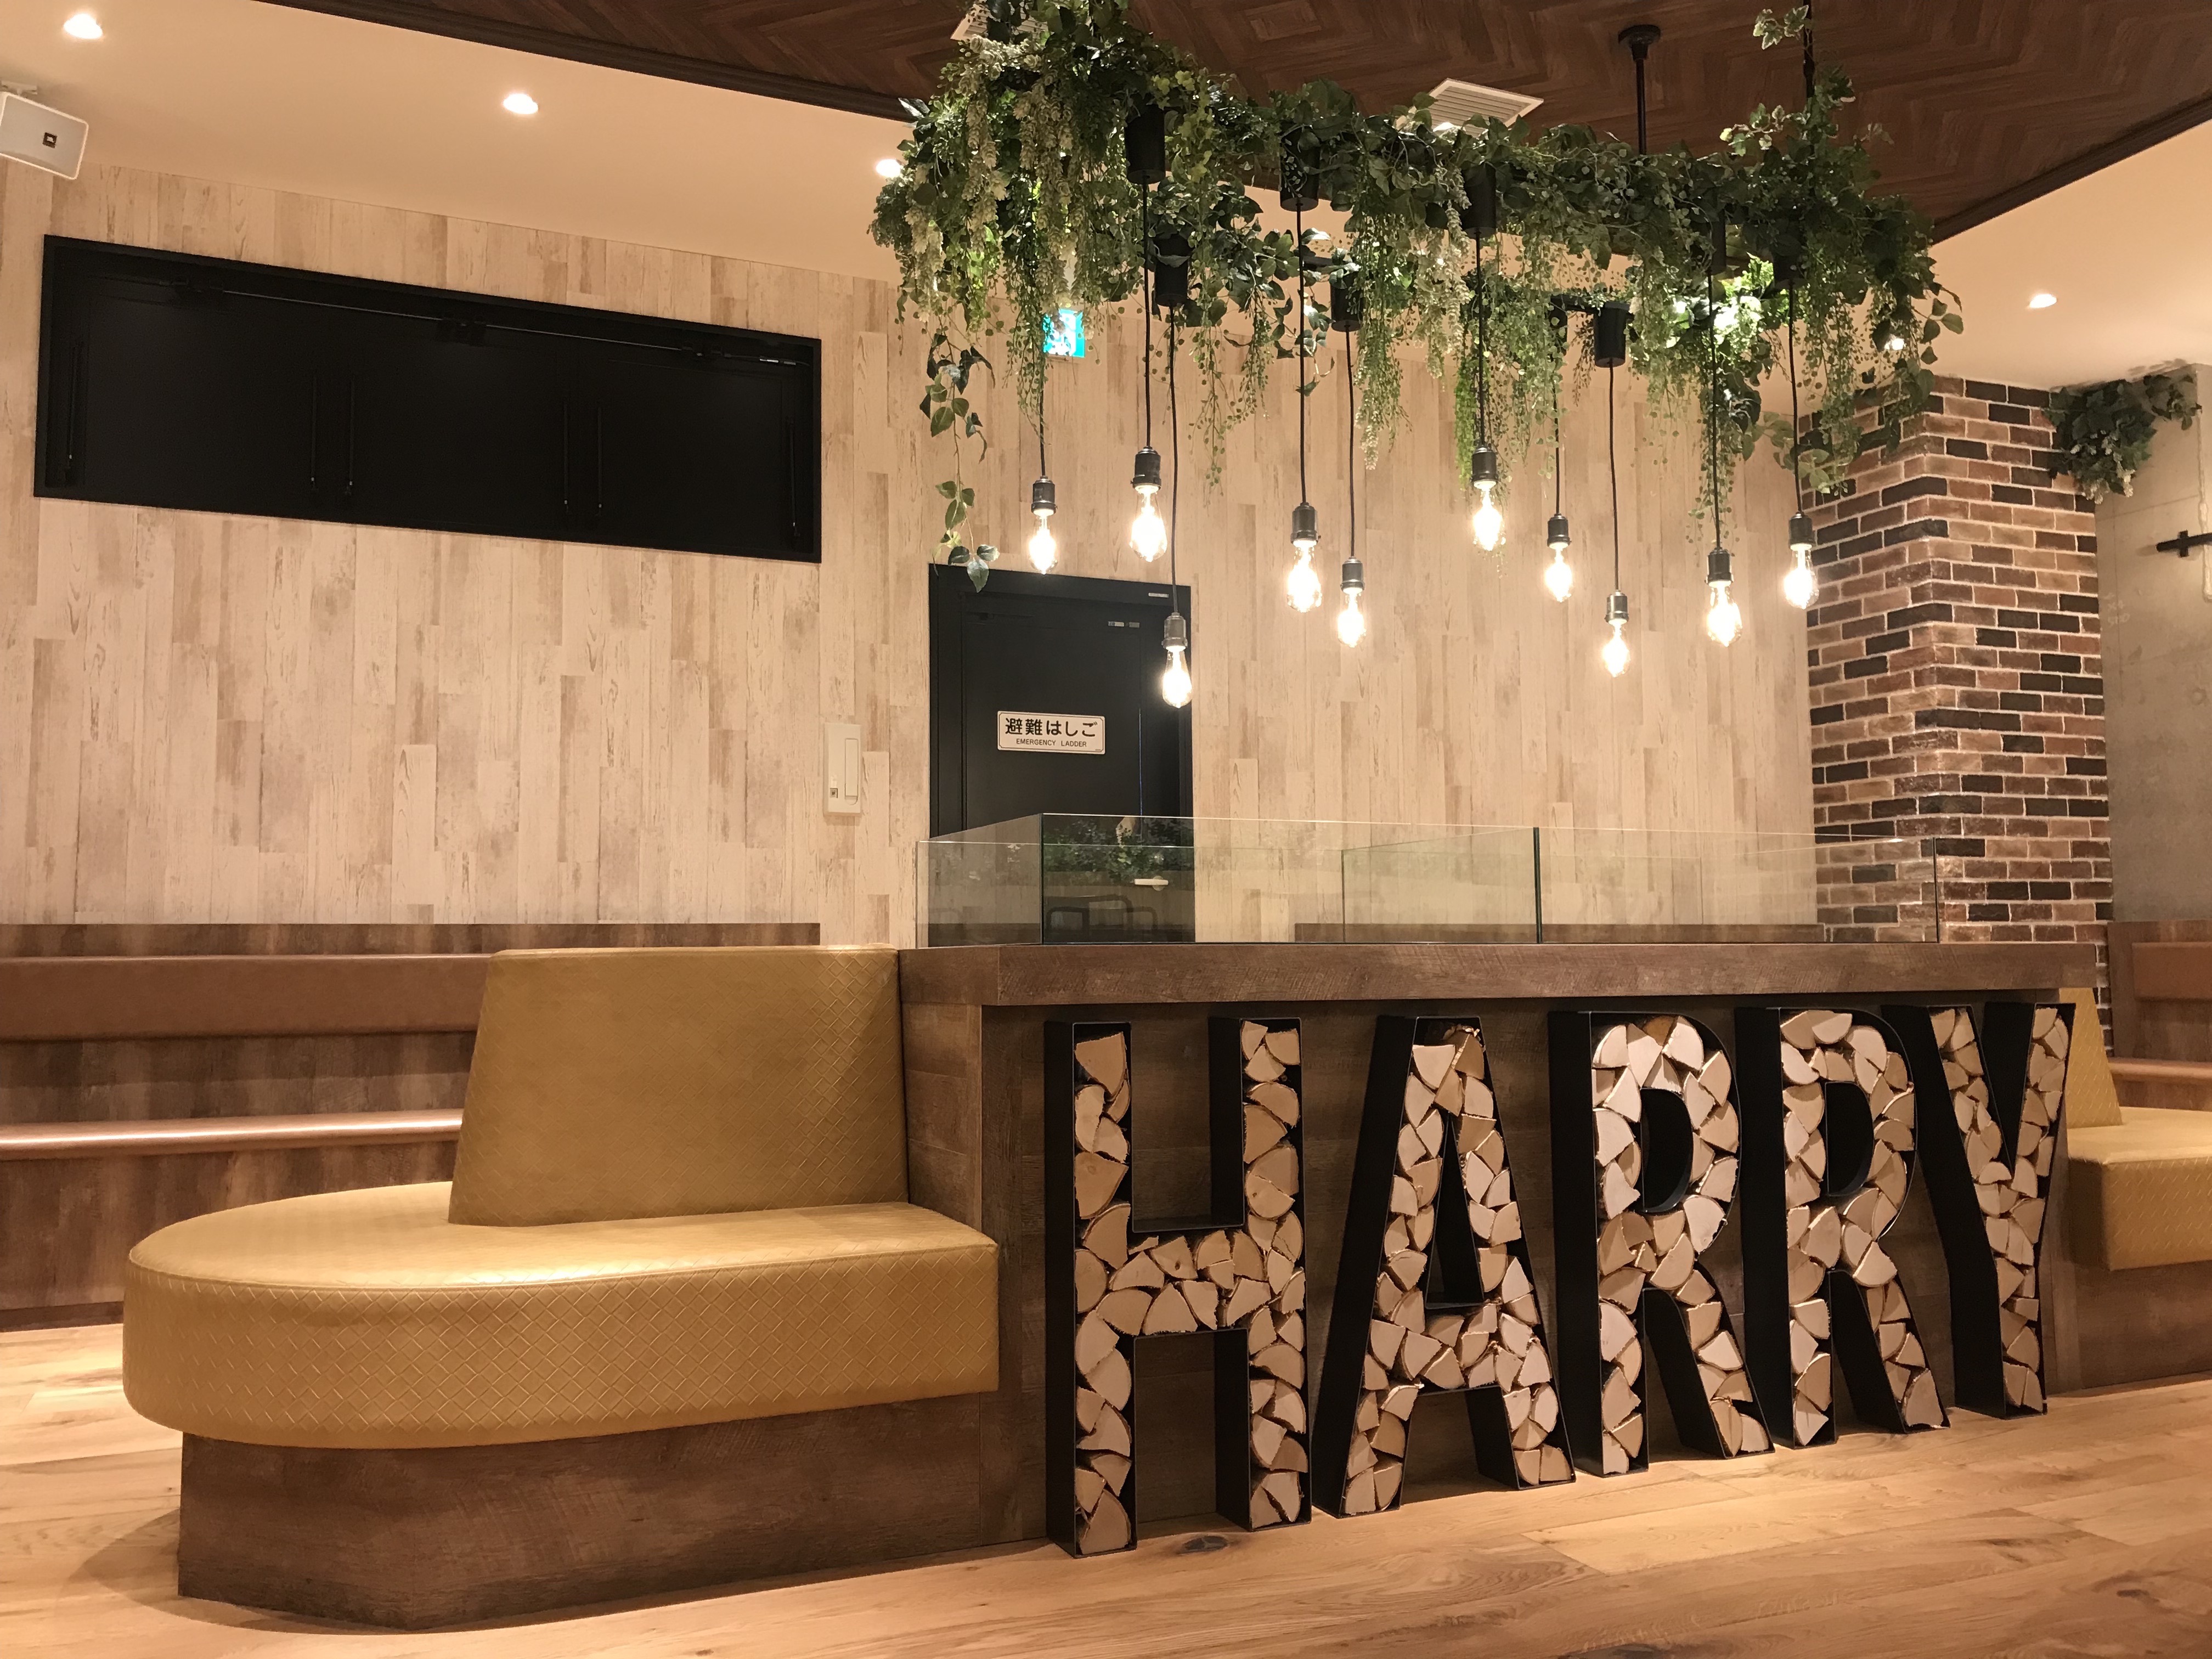 世界初のハリネズミカフェで有名なHARRYが待望の横浜に動物カフェを新OPEN ！！｜合同会社MS.BUNNYのプレスリリース